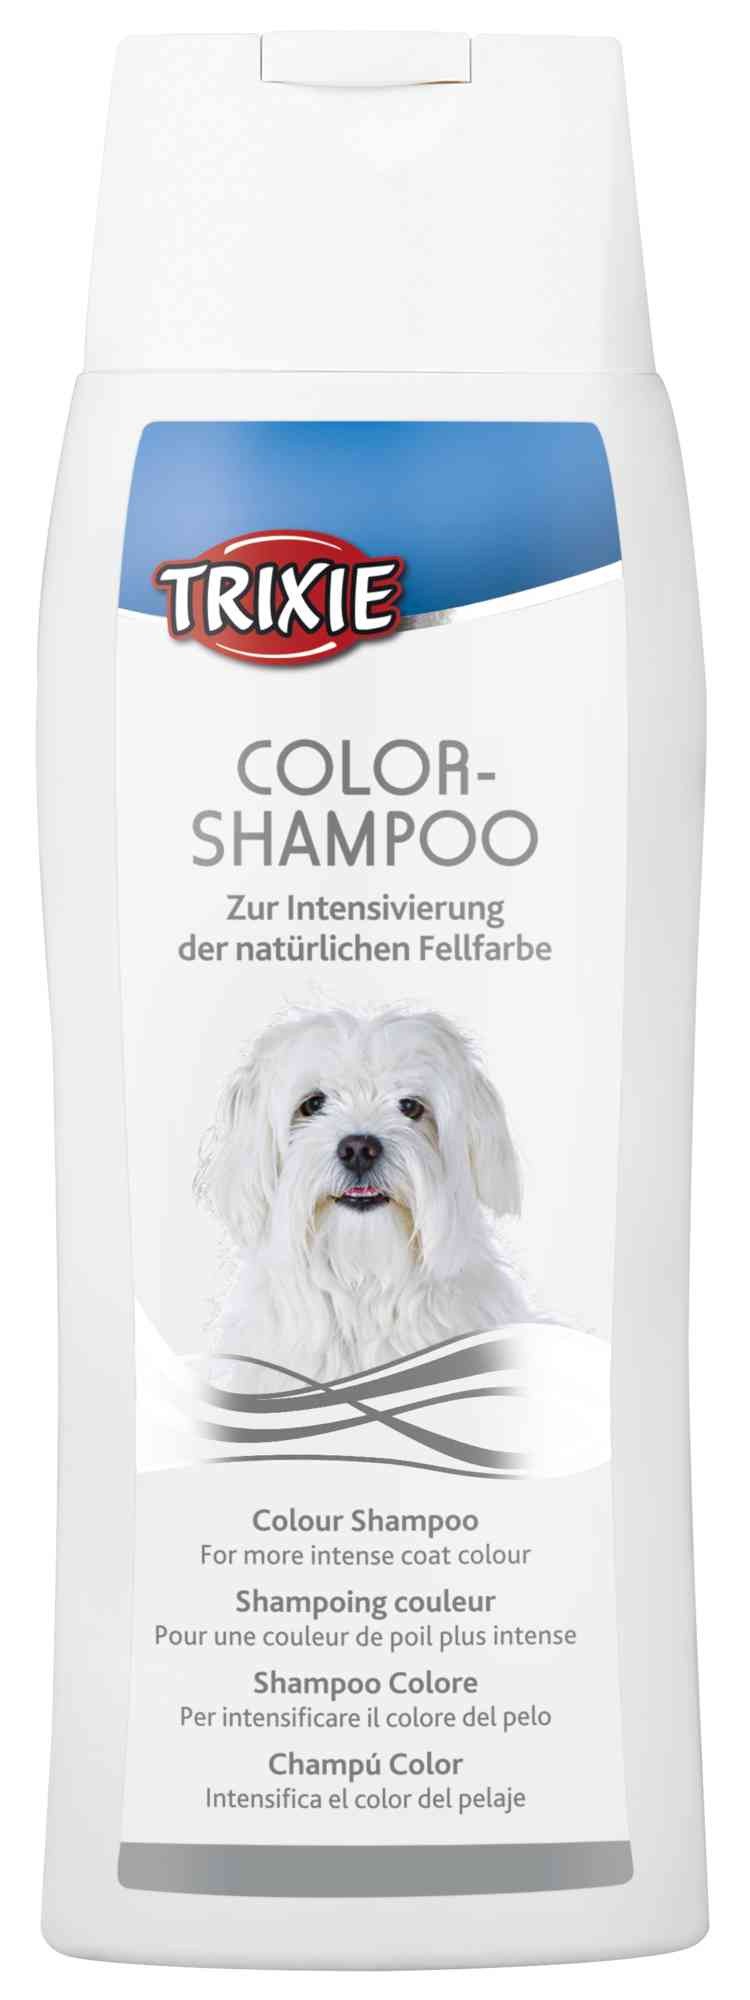 bezoeker Vereniging Licht Blauwe shampoo voor witte honden in flessen van 300 ml.